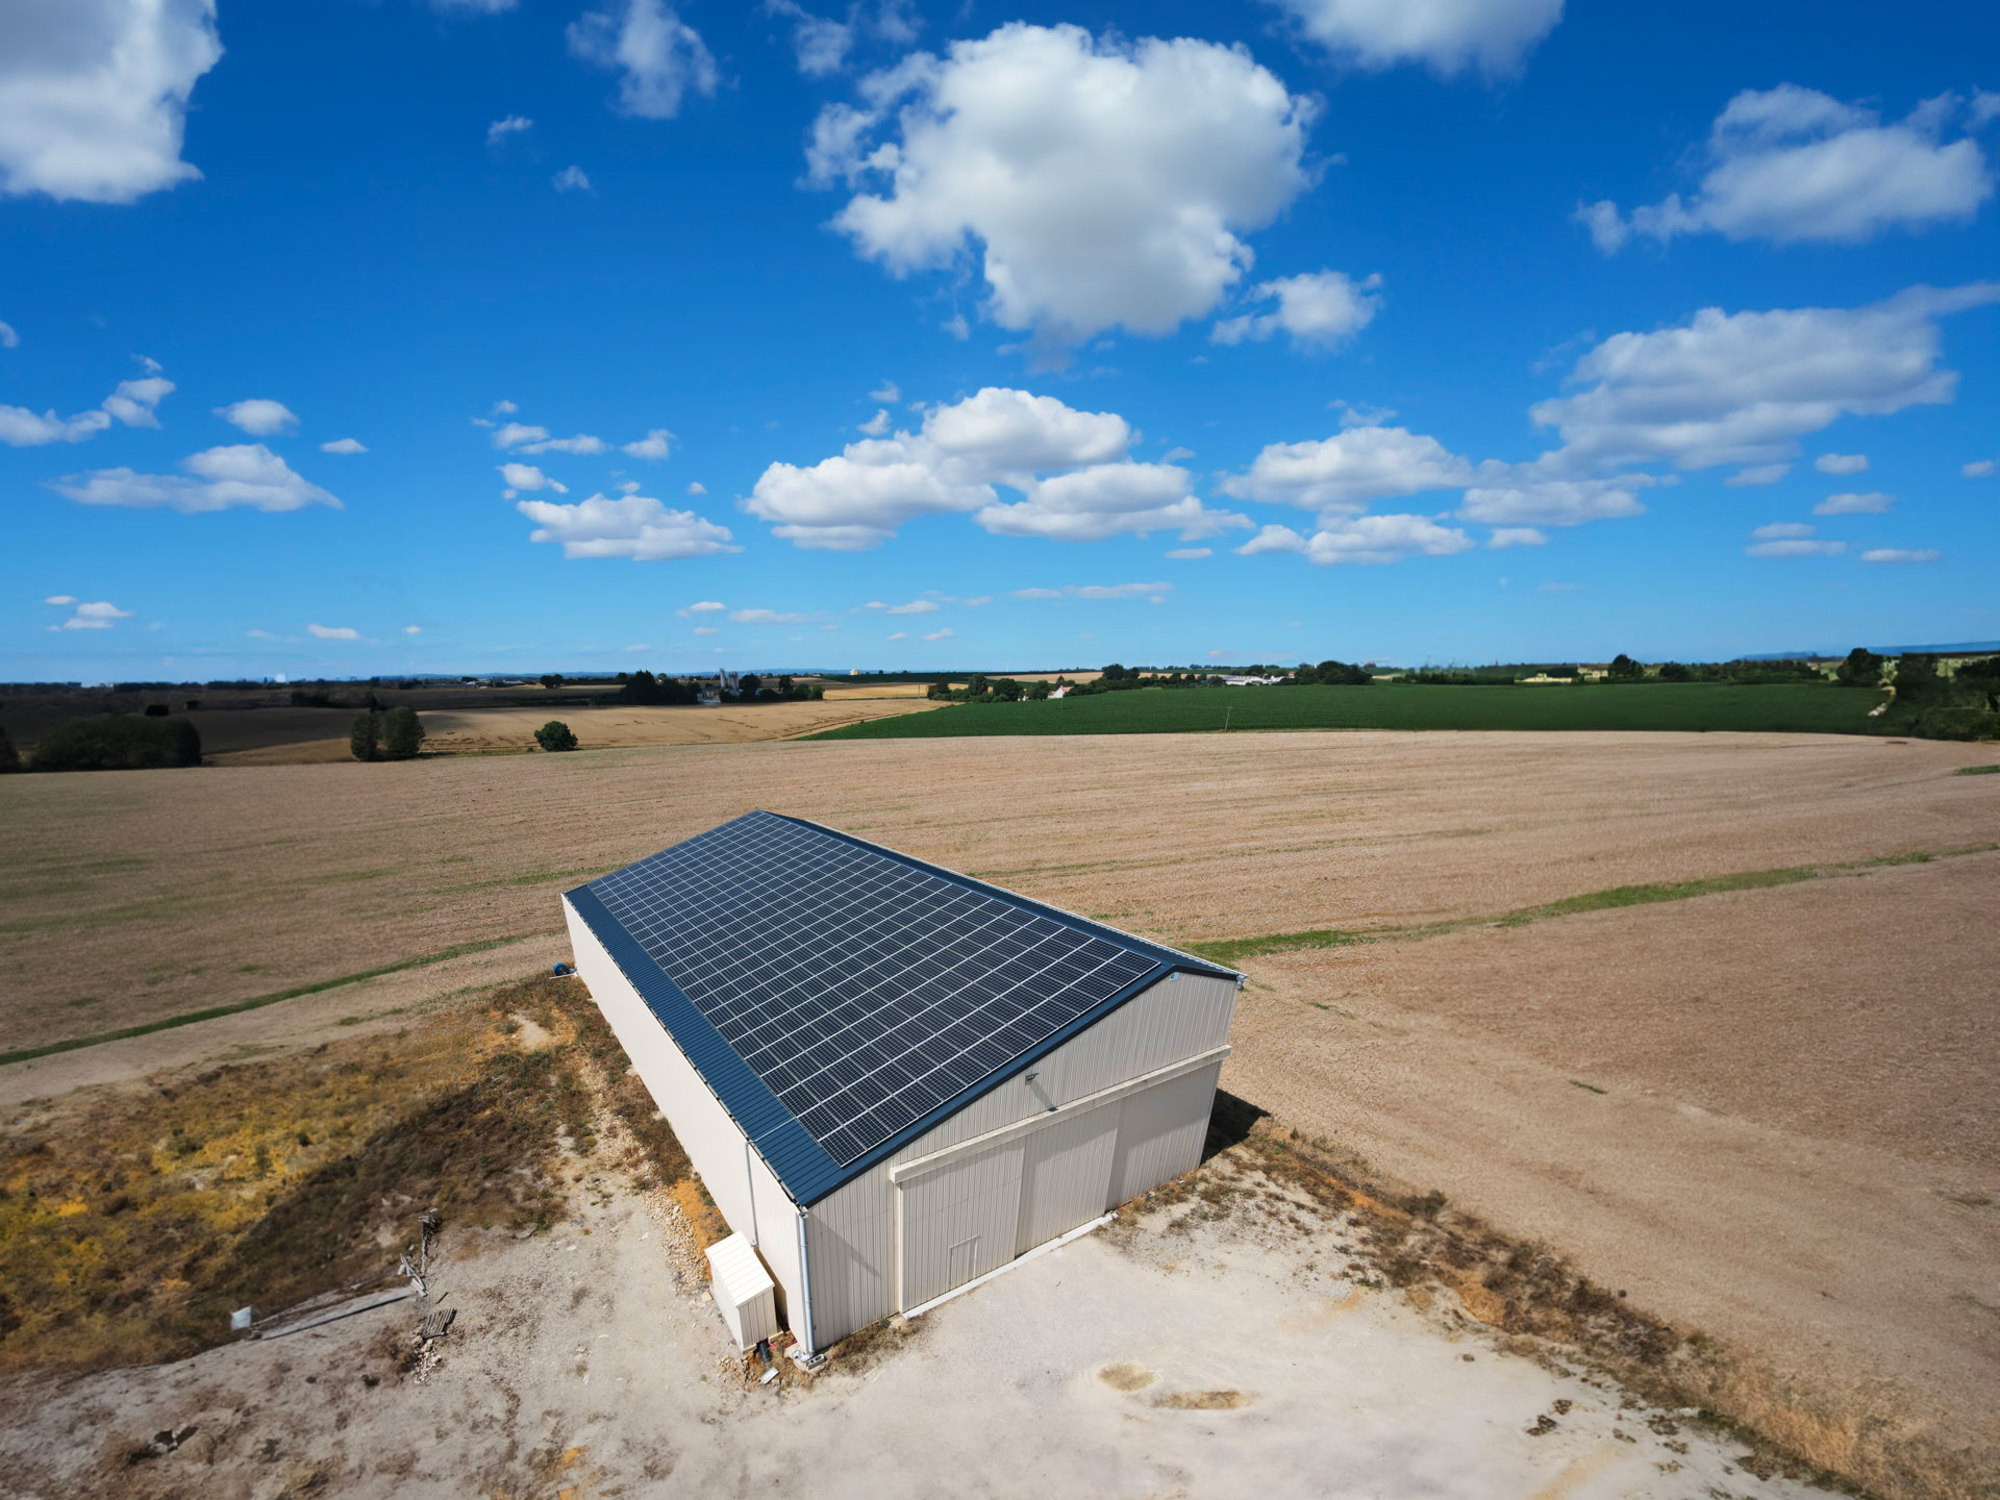 Bâtiment agricole équipé d'une solution solaire par Triangle Énergie, montrant une exploitation agricole moderne et durable.